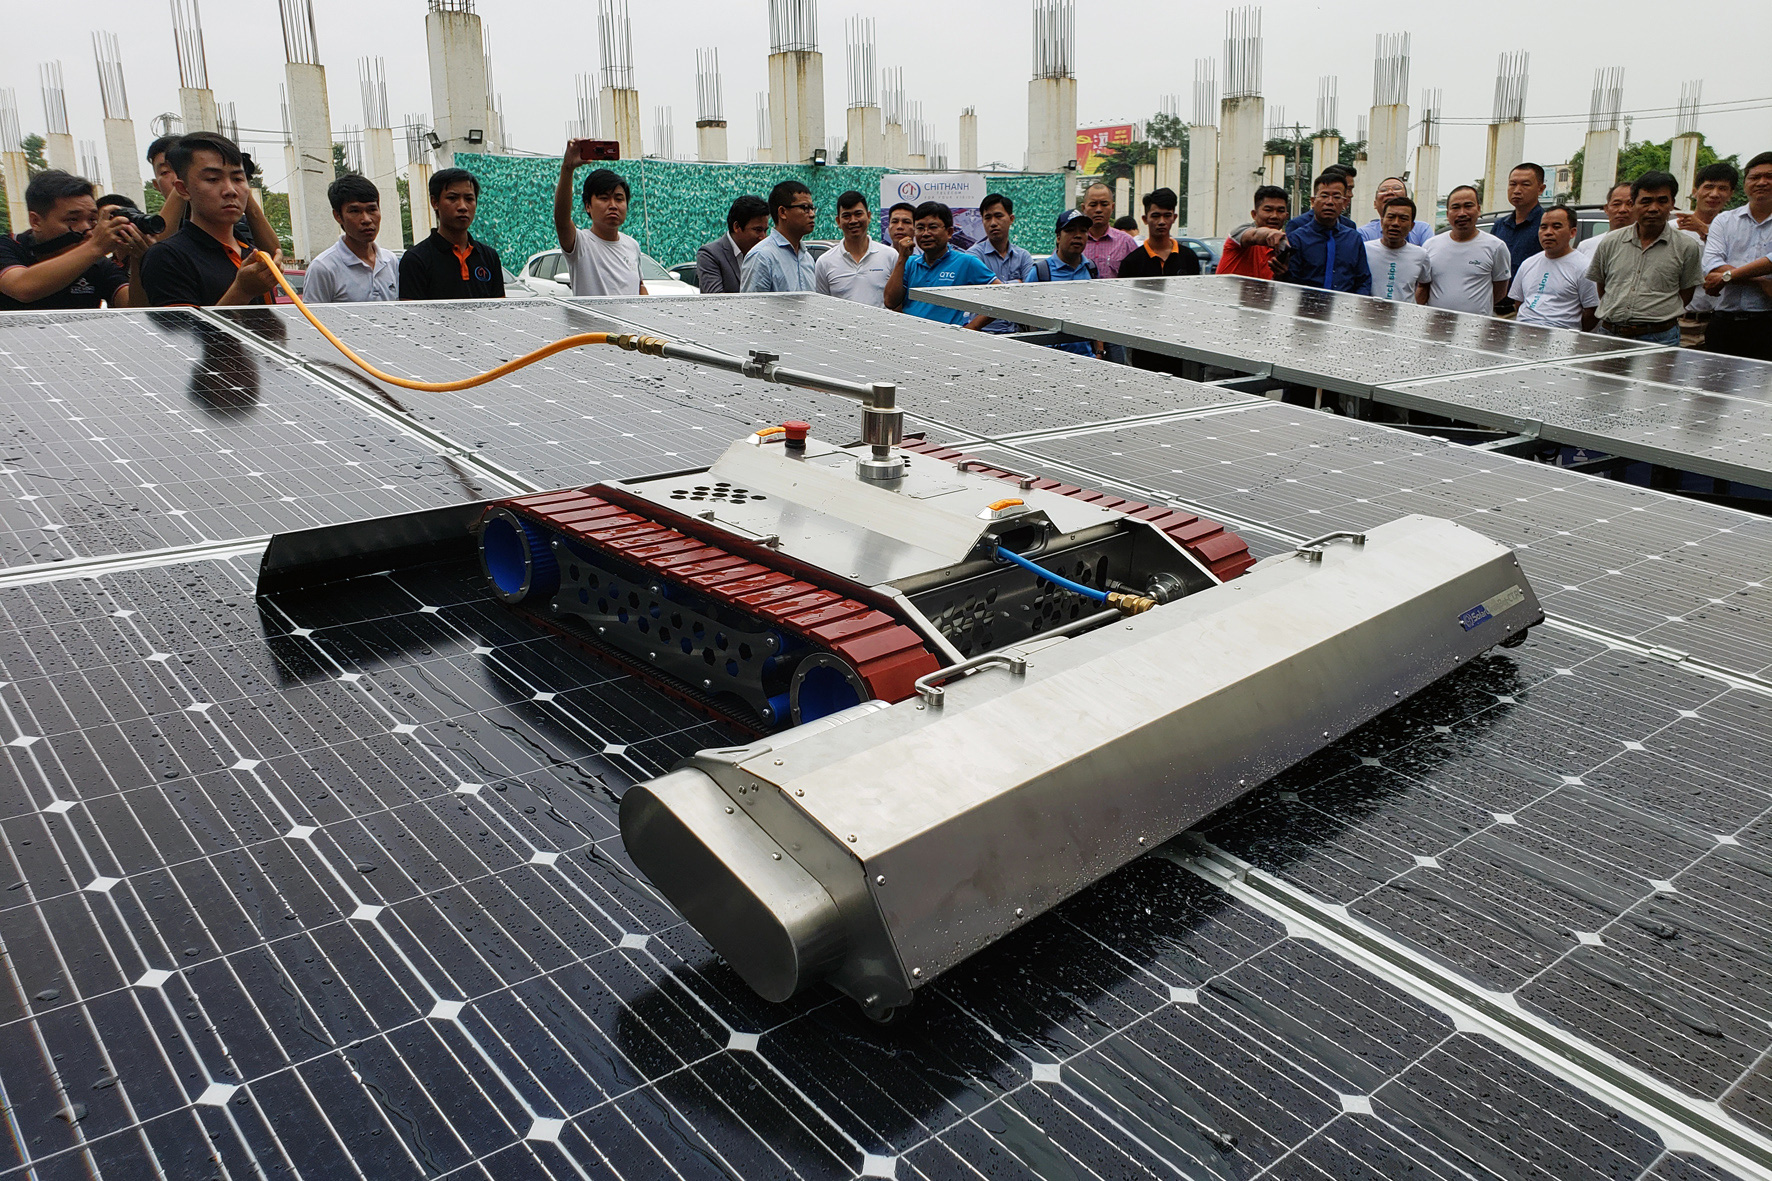 Doanh nghiệp Việt chế tạo thành công robot vệ sinh tấm pin năng lượng mặt trời - Ảnh 1.